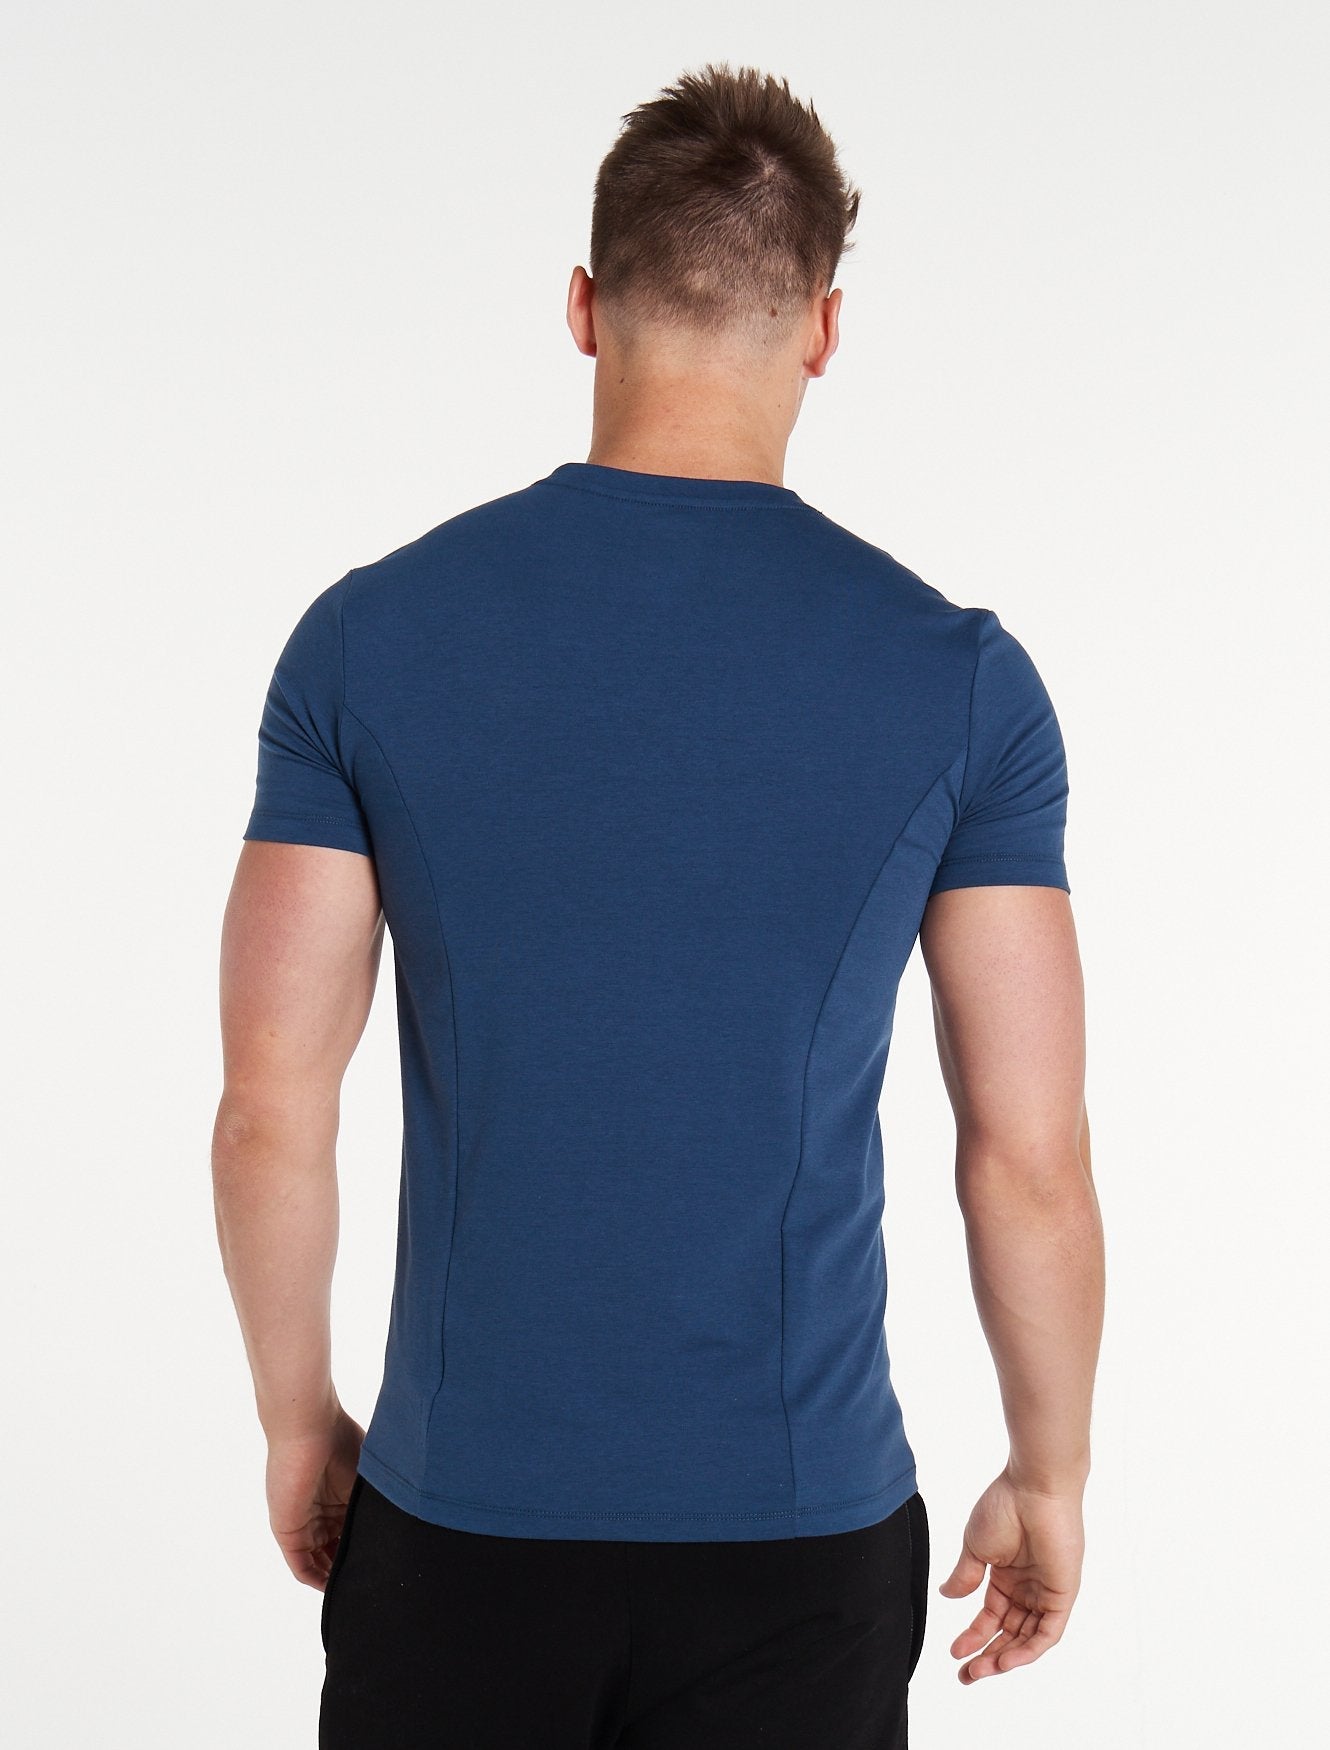 Essential T-Shirt / Blue Pursue Fitness 2